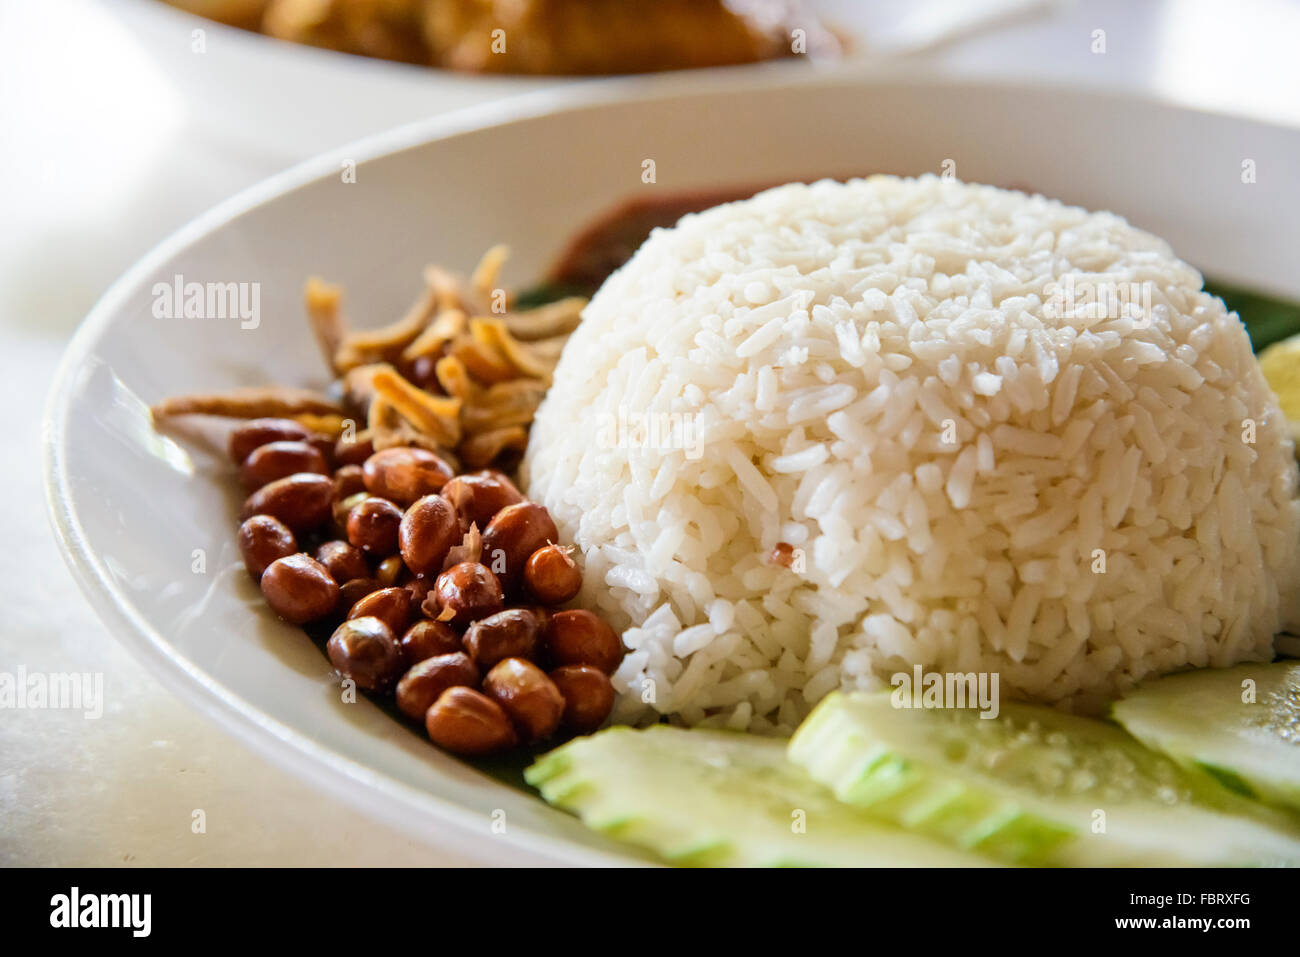 Popular Malaysian food - nasi lemak Stock Photo